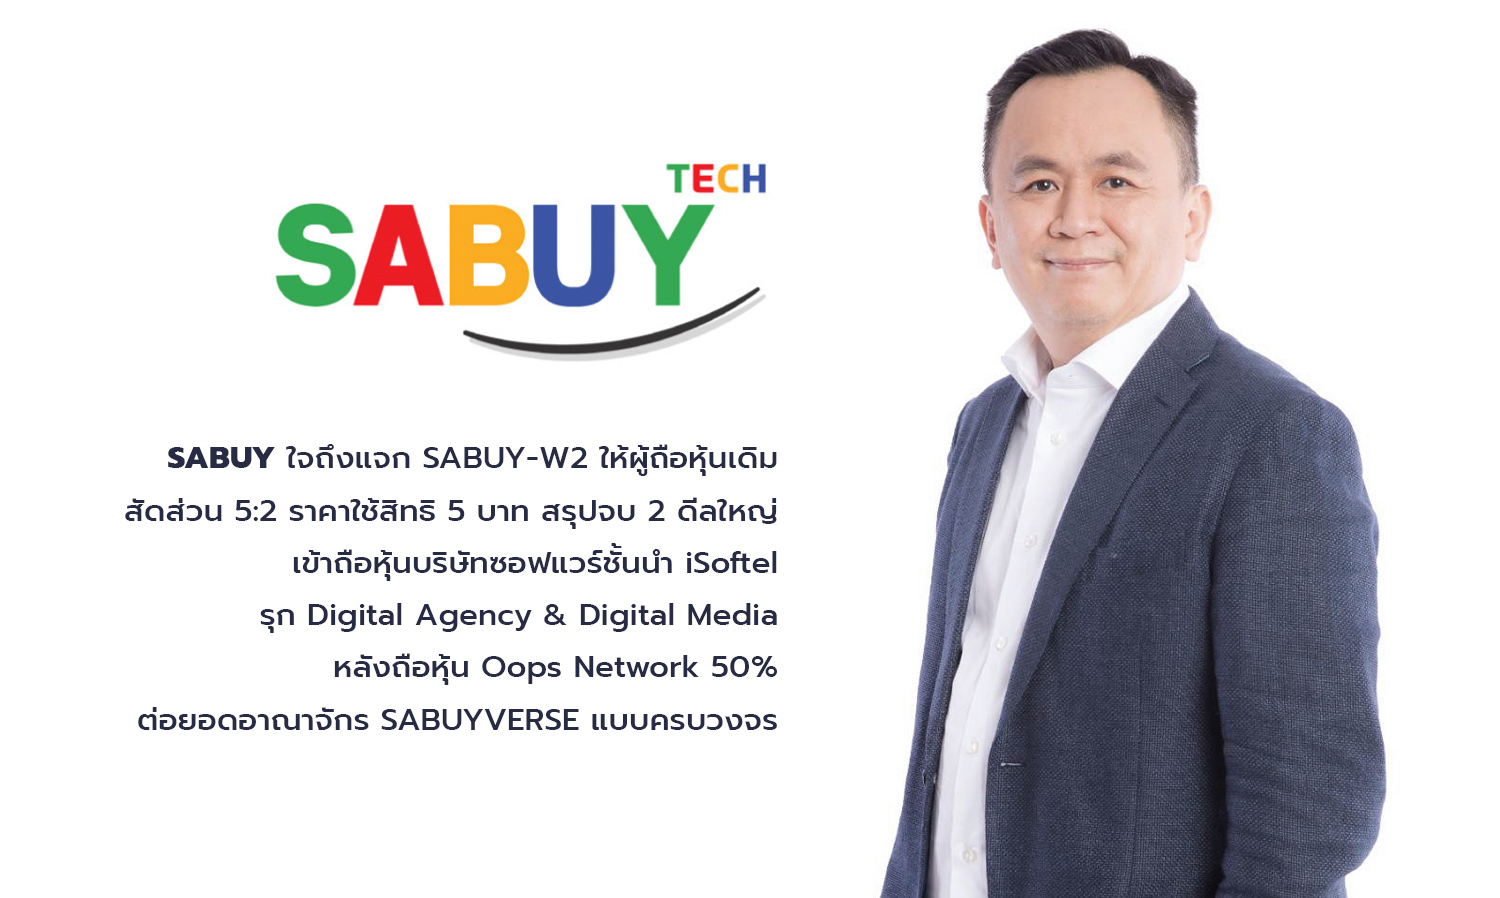 SABUY ใจถึงแจก SABUY-W2 ให้ผู้ถือหุ้นเดิม สัดส่วน 5:2 ราคาใช้สิทธิ 5 บาท สรุปจบ 2 ดีลใหญ่ เข้าถือหุ้นบริษัทซอฟแวร์ชั้นนำ iSoftel รุก Digital Agency & Digital Media หลังถือหุ้น Oops Network 50% ต่อยอดอาณาจักร SABUYVERSE แบบครบวงจร